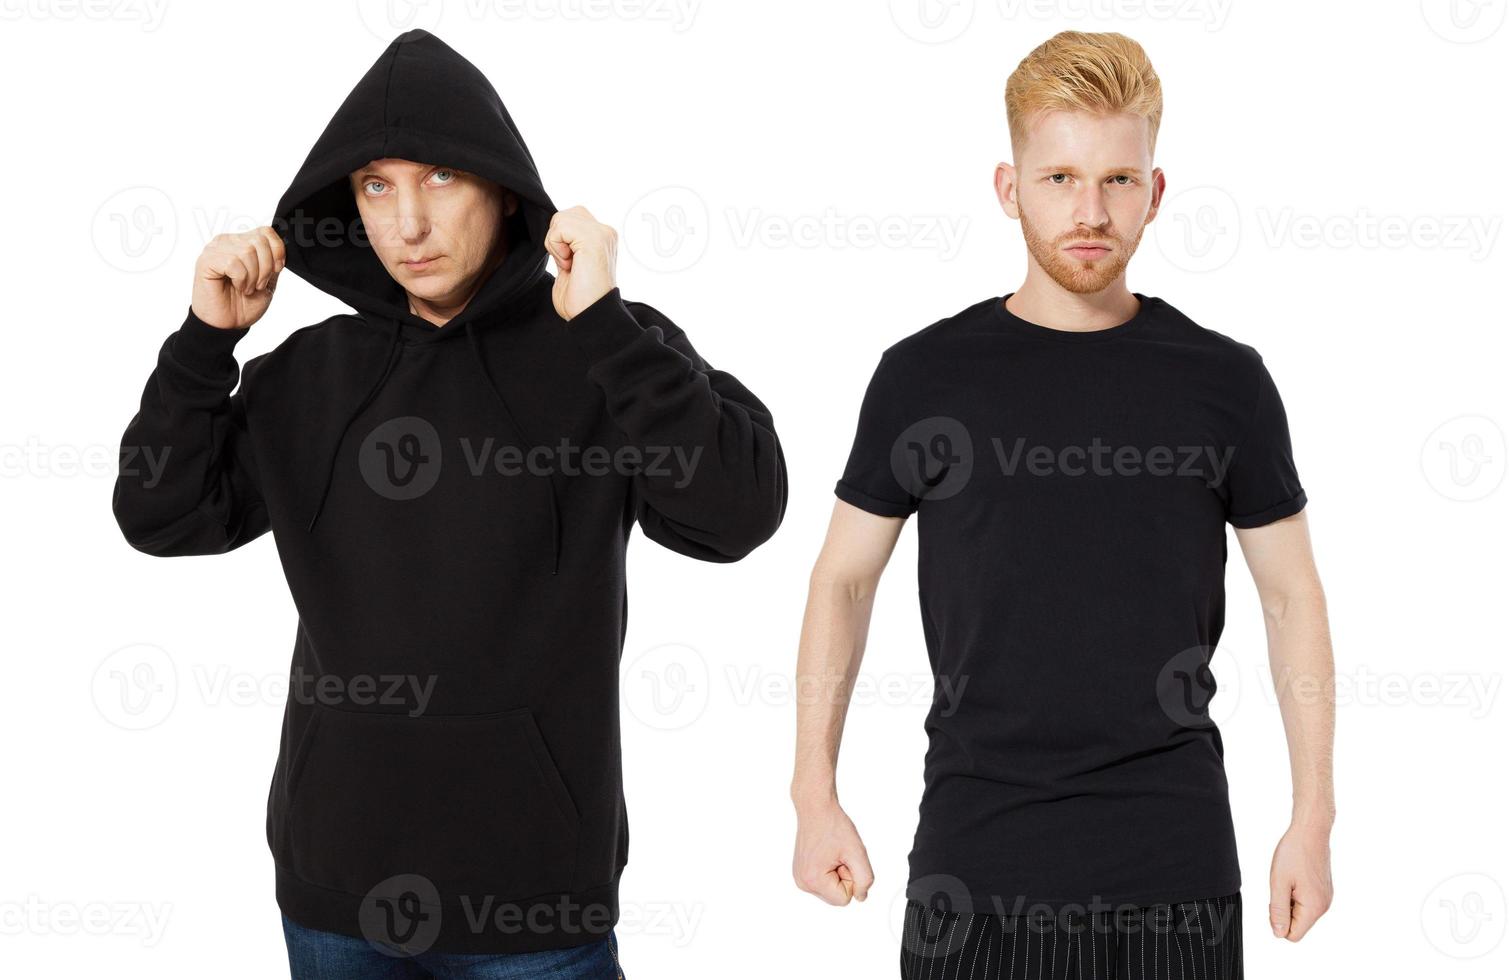 zwarte hoody t-shirt mock-up set geïsoleerd vooraanzicht, man in zwarte hoody en man in t-shirt mockup set geïsoleerd op een witte achtergrond. twee jongens in een lege zwarte hoodie en t-shirtcollage foto